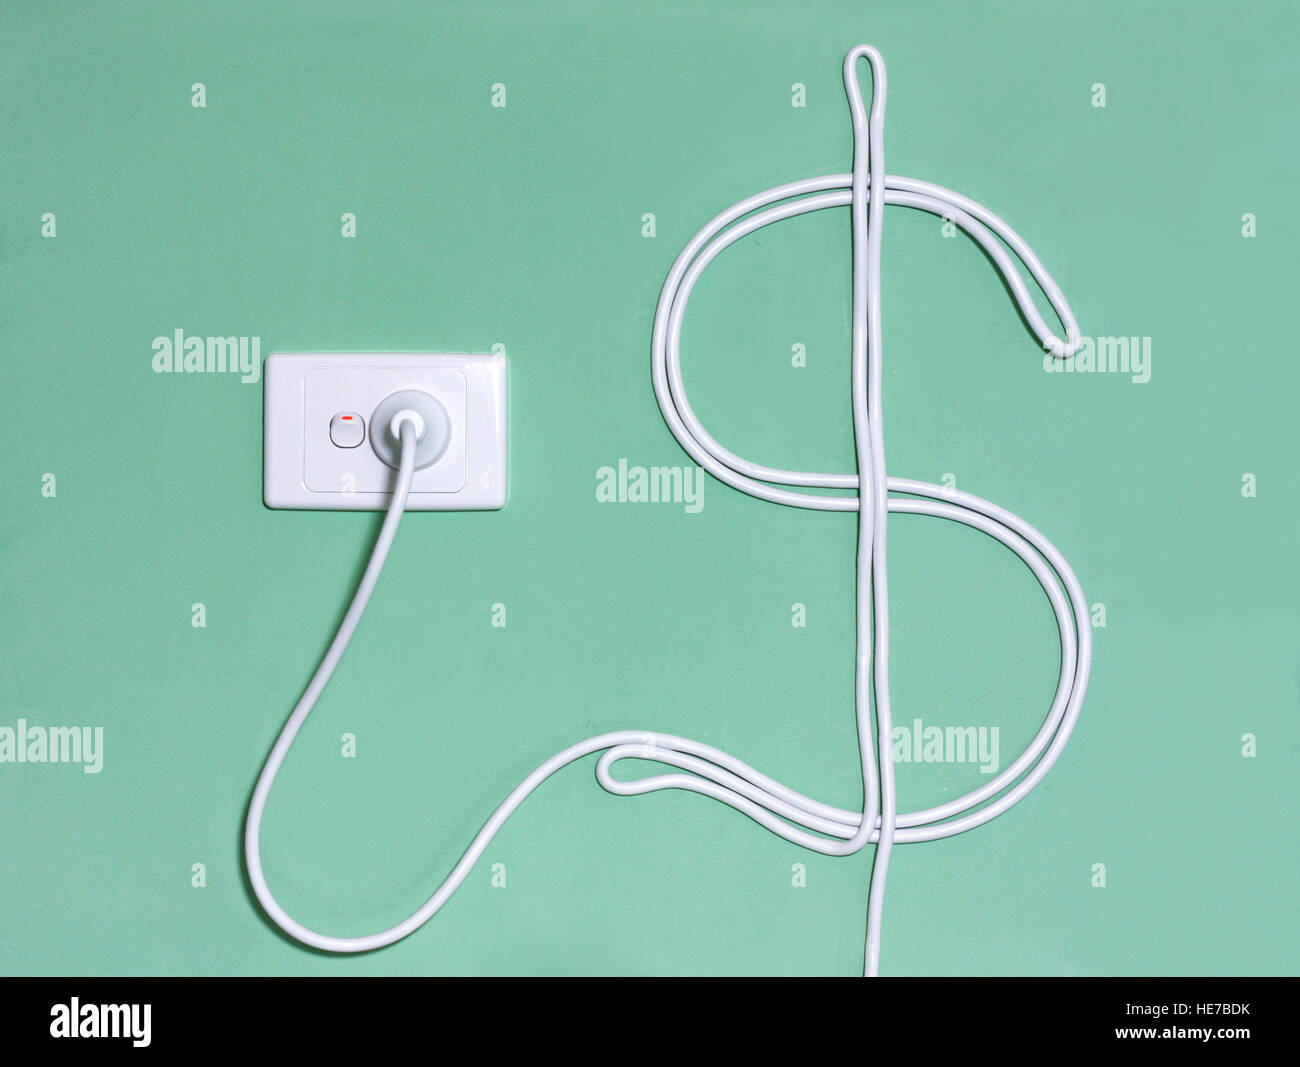 Prise murale de l'électricité et le cordon d'alimentation dans le symbole du dollar ; illustrant le concept de coût de l'énergie et de dépenses. Banque D'Images